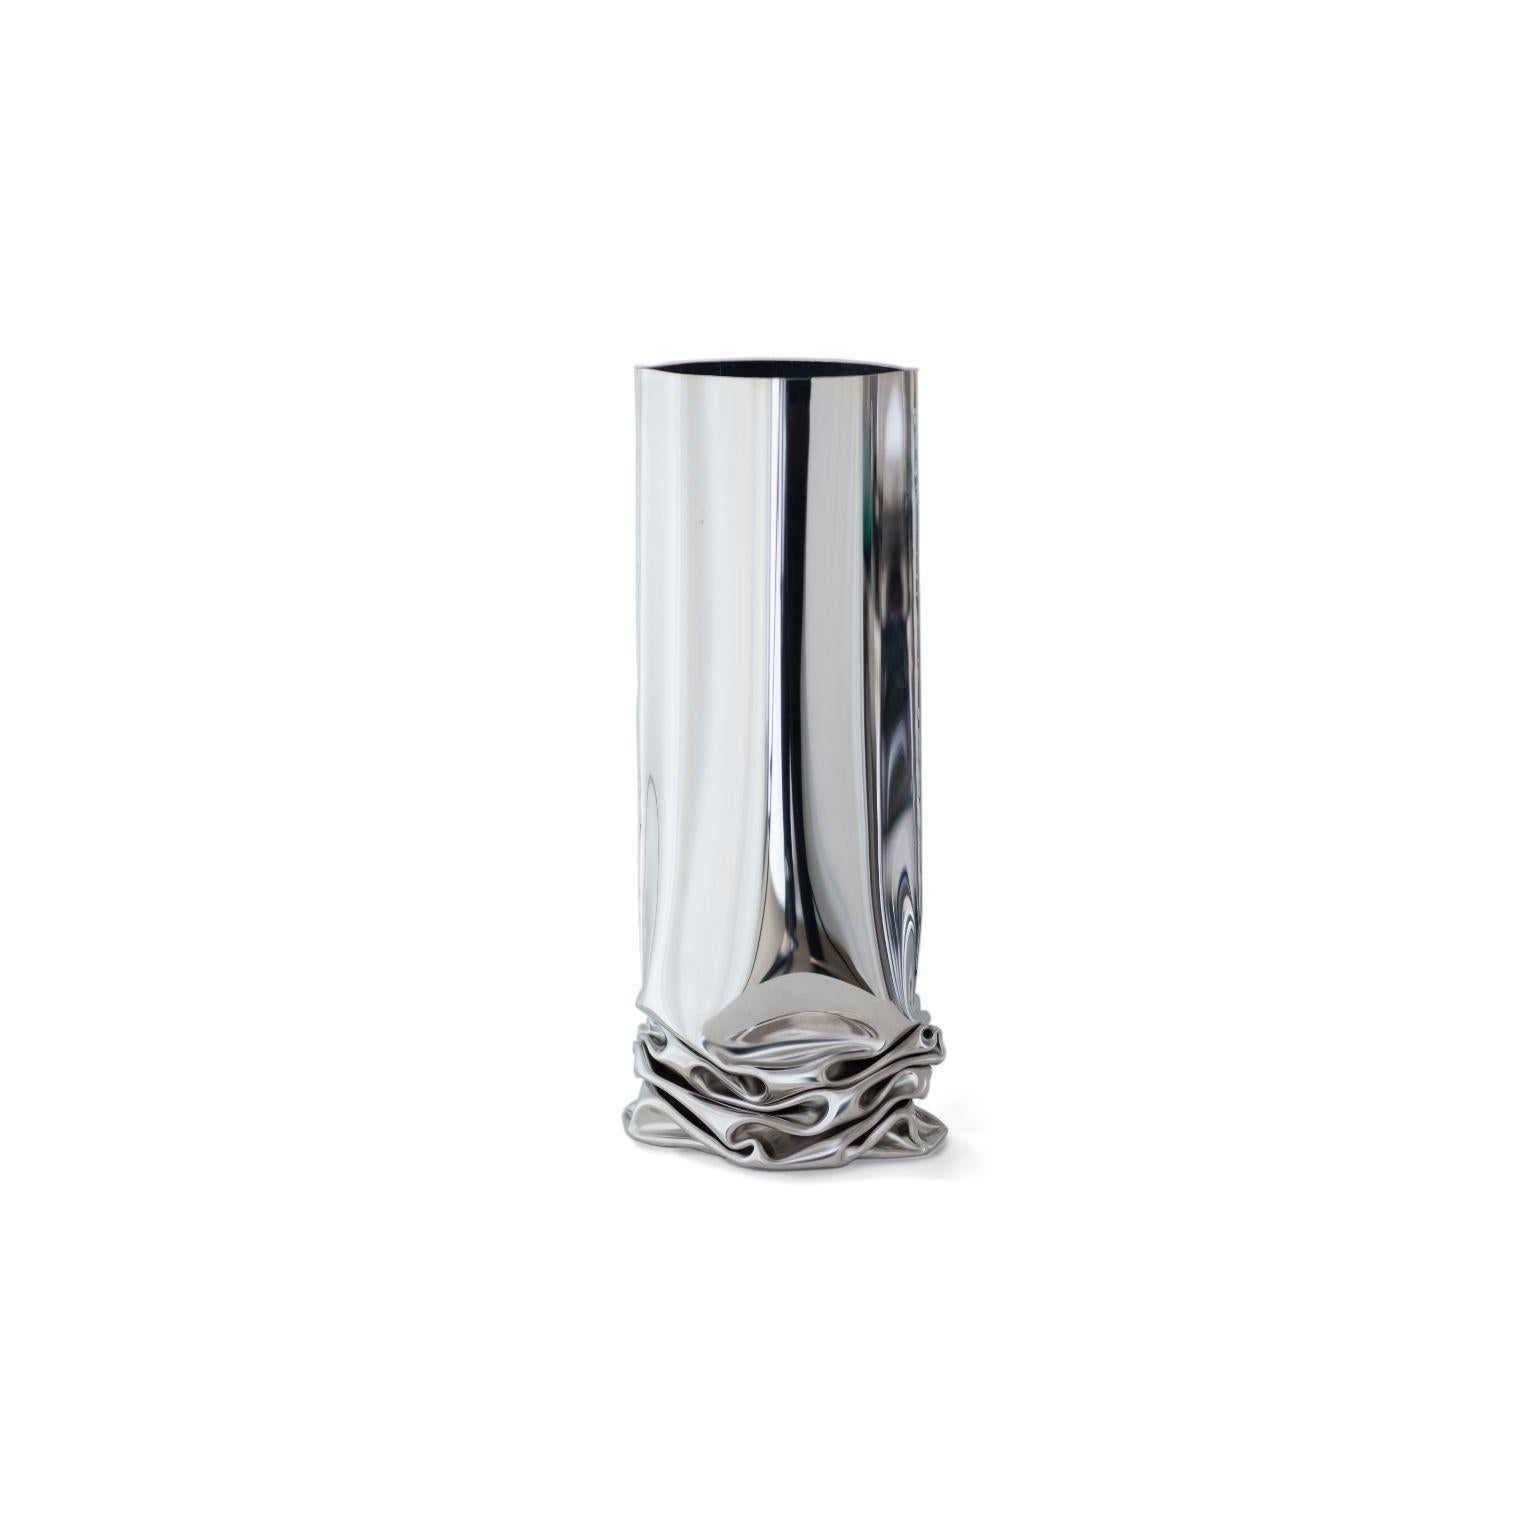 Vase Crash 1 de Zieta
Dimensions : D 20 x L 13,5 x H 30 cm
MATERIAL : acier inoxydable.

L'objectif principal de Zieta est d'offrir un design et une construction uniques et personnalisés, tout en maintenant une efficacité innovante en matière de